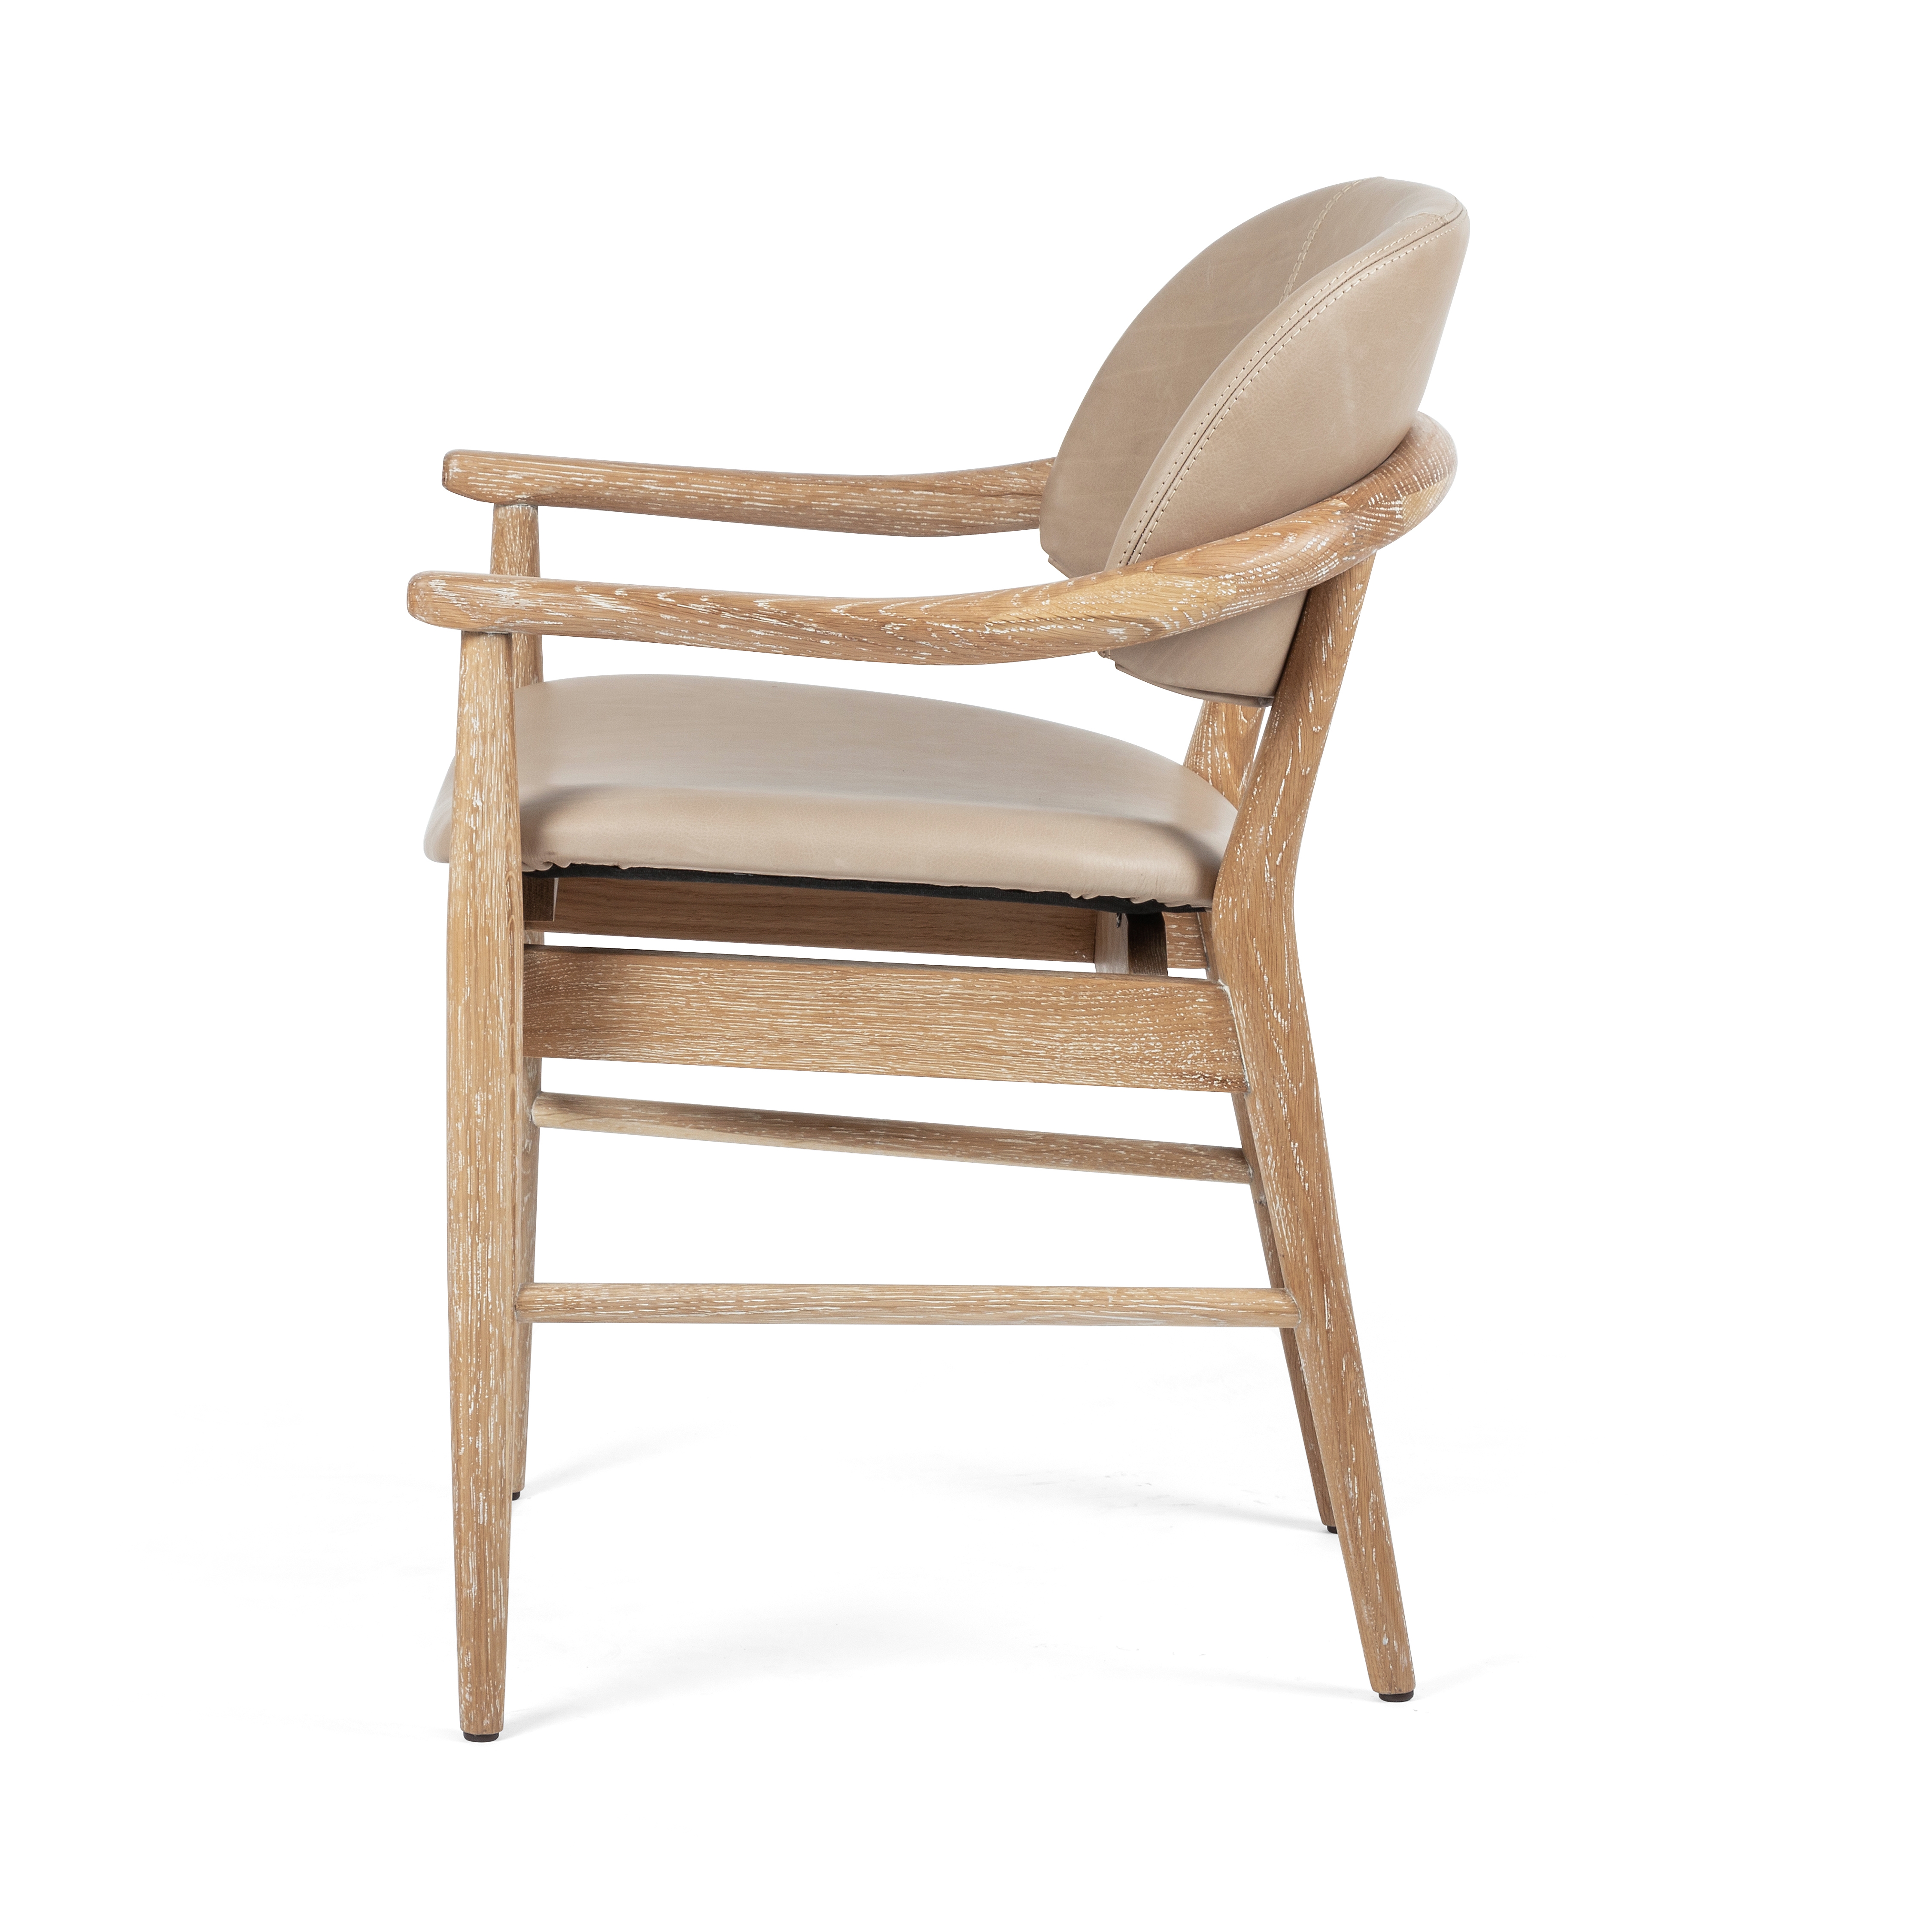 Josie Dining Chair-Vintage Whitewash Ash - Image 3